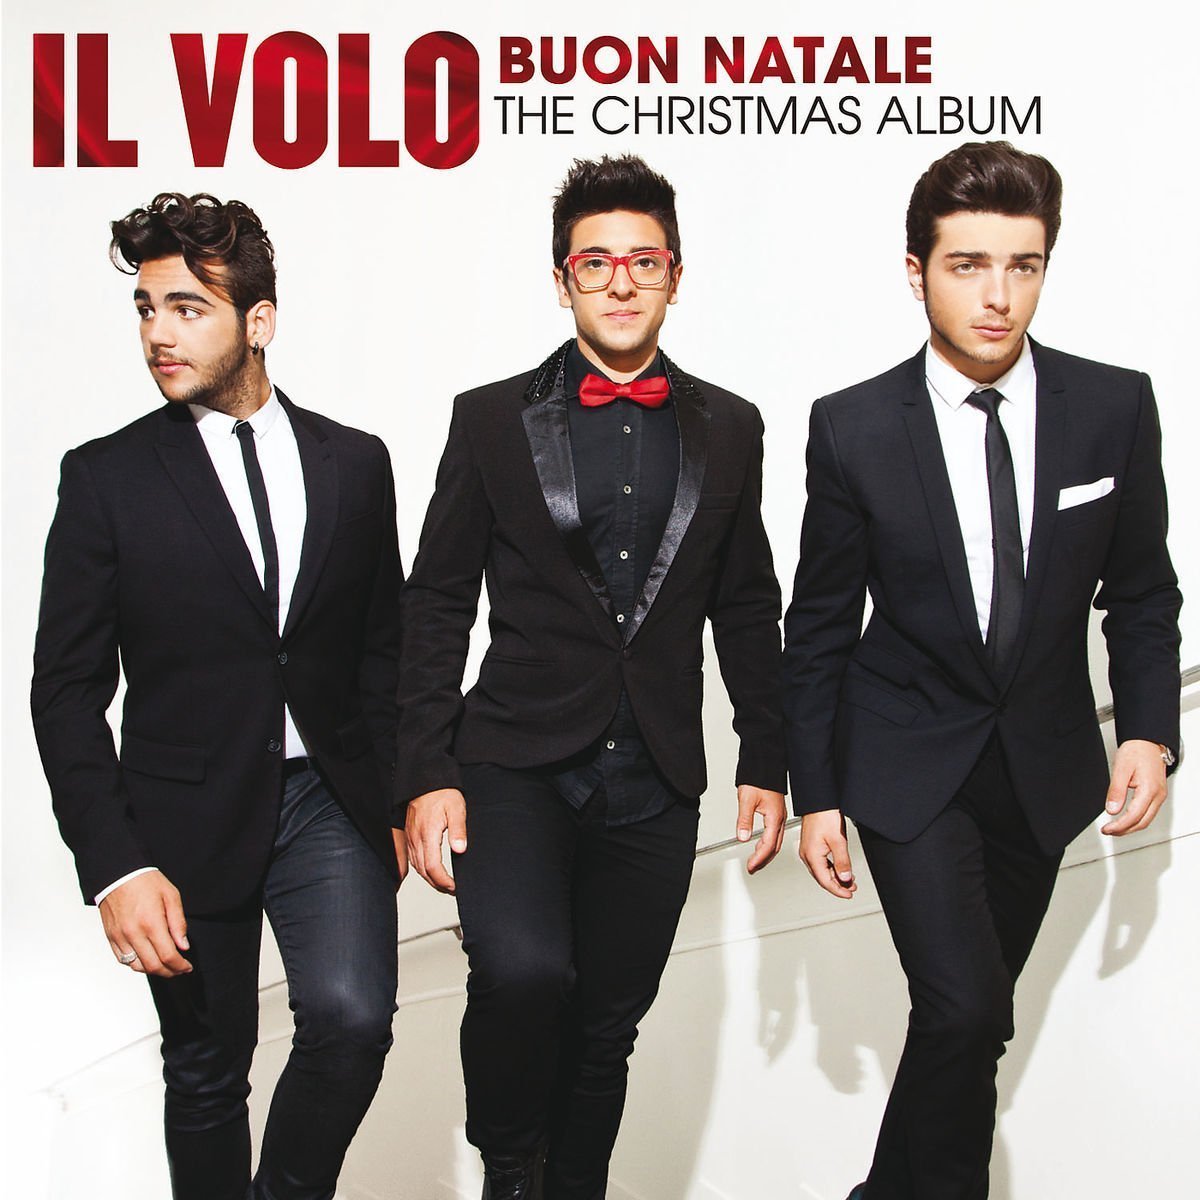 Buon natale the christmas album by il volo